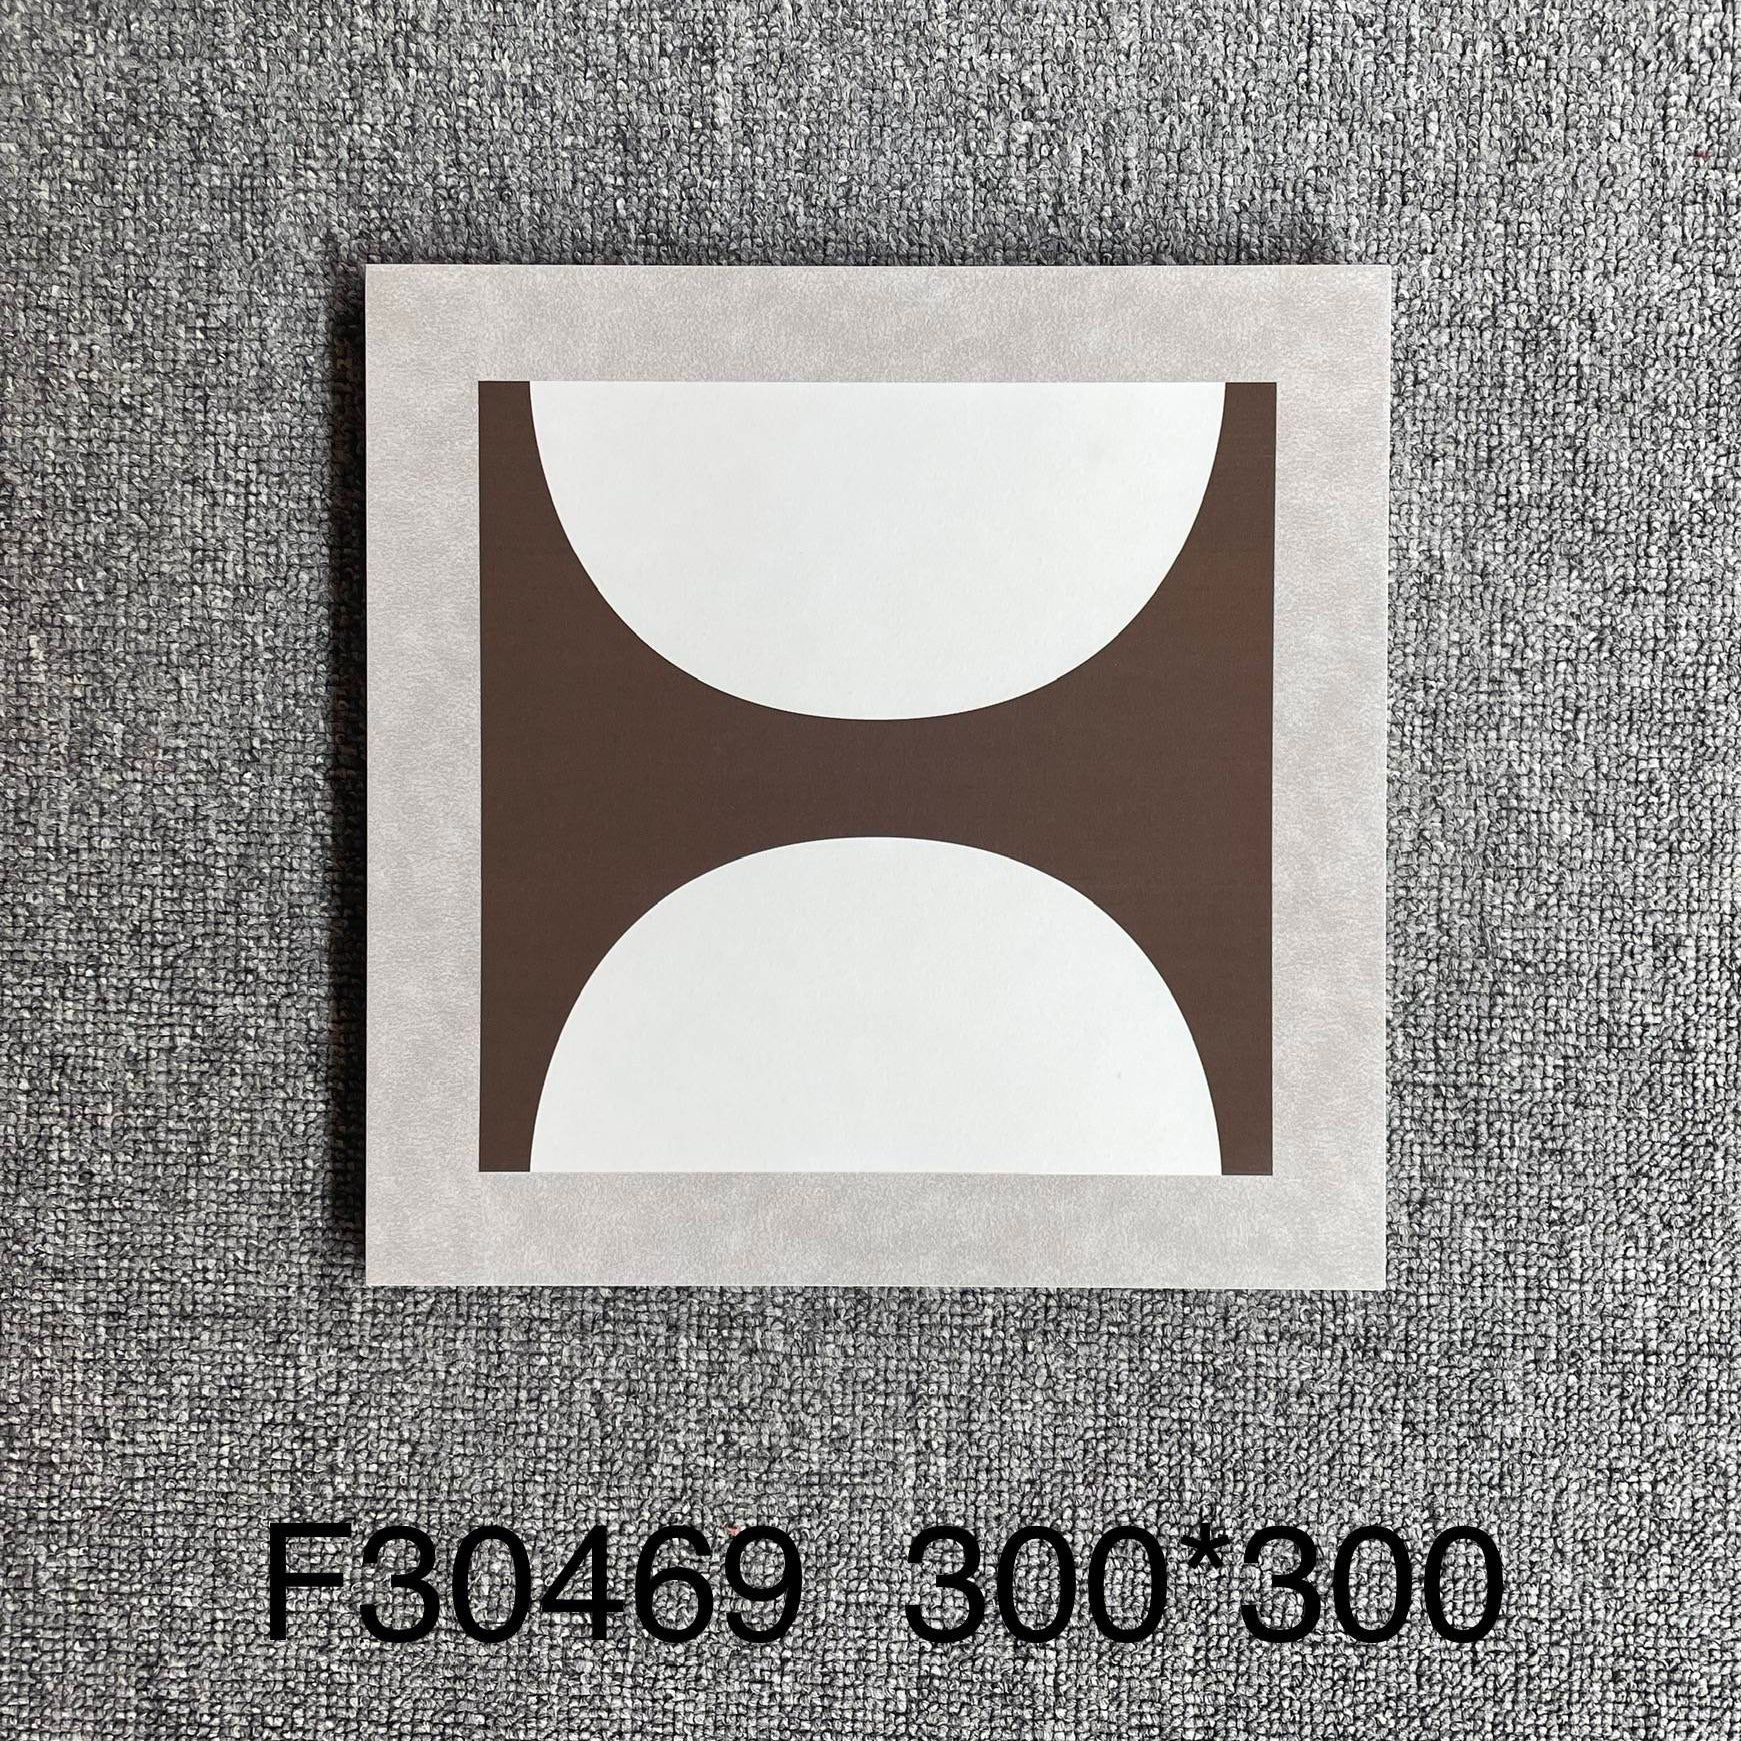 中國佛山瓷磚 China Foshan Tiles Encaustic Tiles 啞光地磚 牆磚F30469 F30500 F30549W F30550W花磚 裝飾磚 混裝發貨 隨機圖案 30×30cm